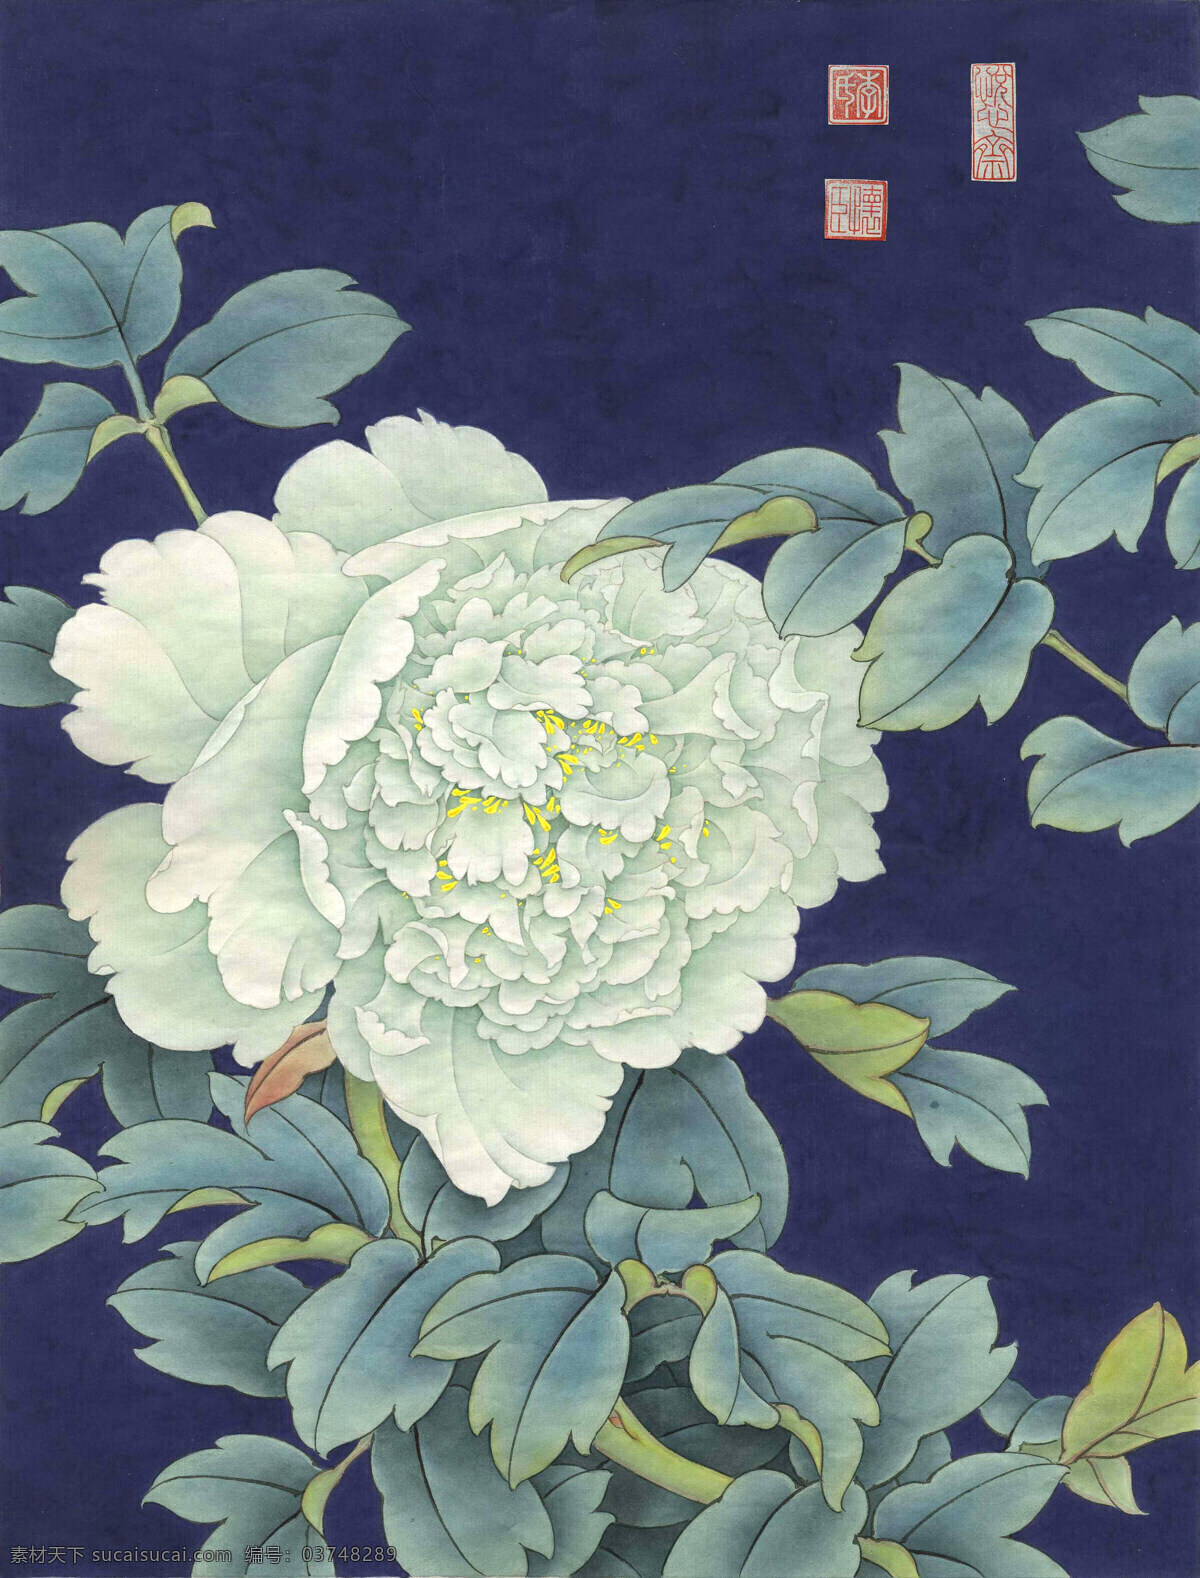 豆绿牡丹花 李怀臣 中国画 工笔 牡丹 豆绿 蓝色背景 绘画书法 文化艺术